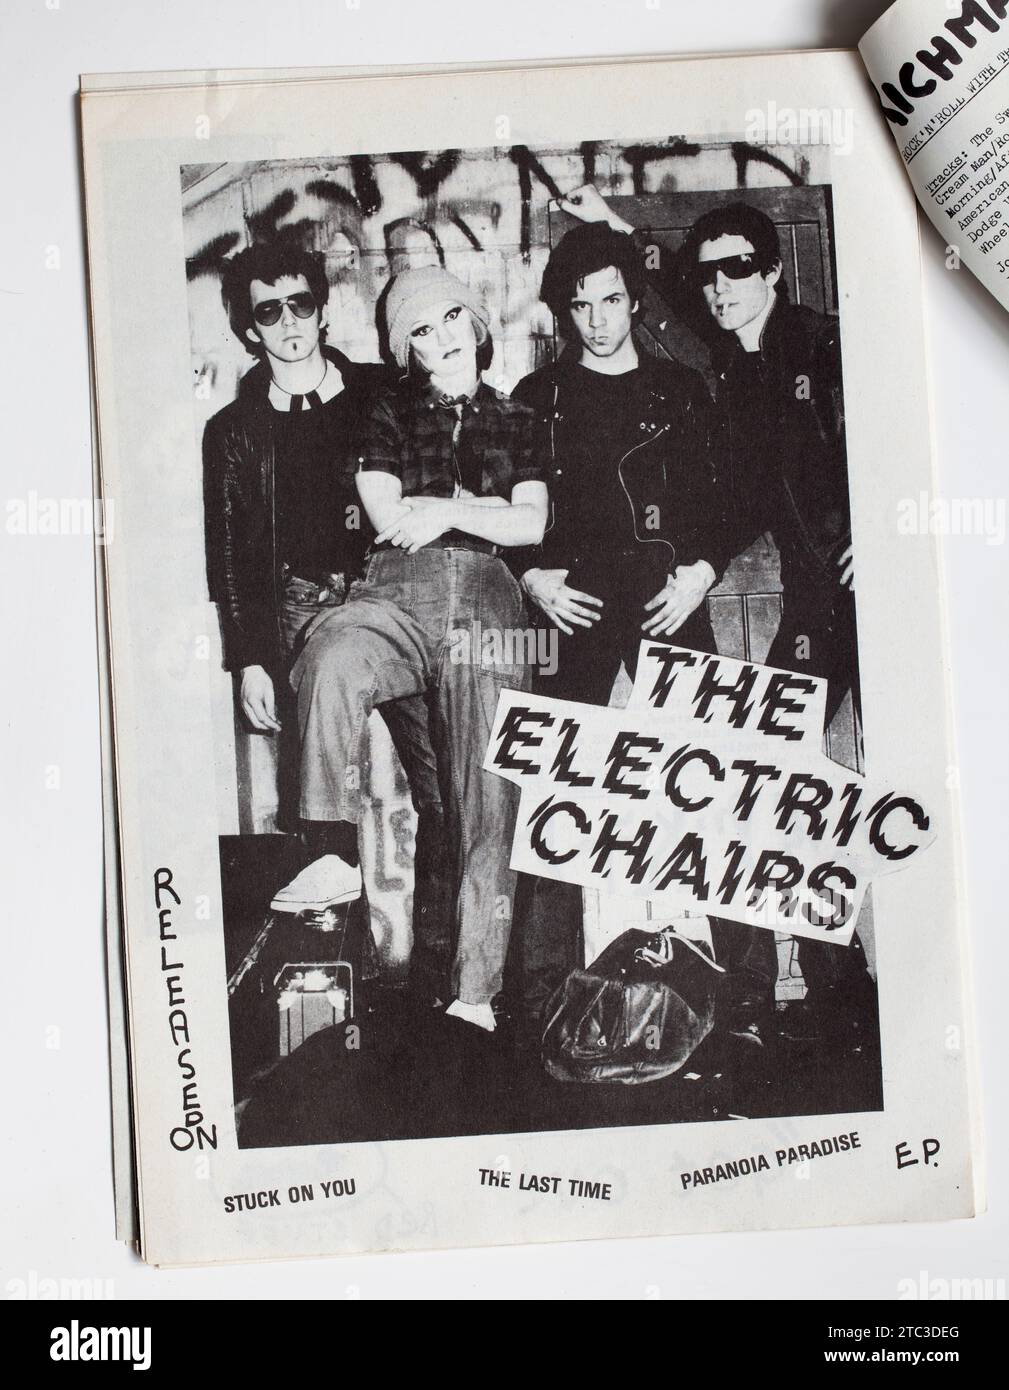 Werbung für die Electric Chairs in Ausgabe 11 im Sniffin Glue Punk Rock Fanzine Magazine der 1970er Jahre Stockfoto